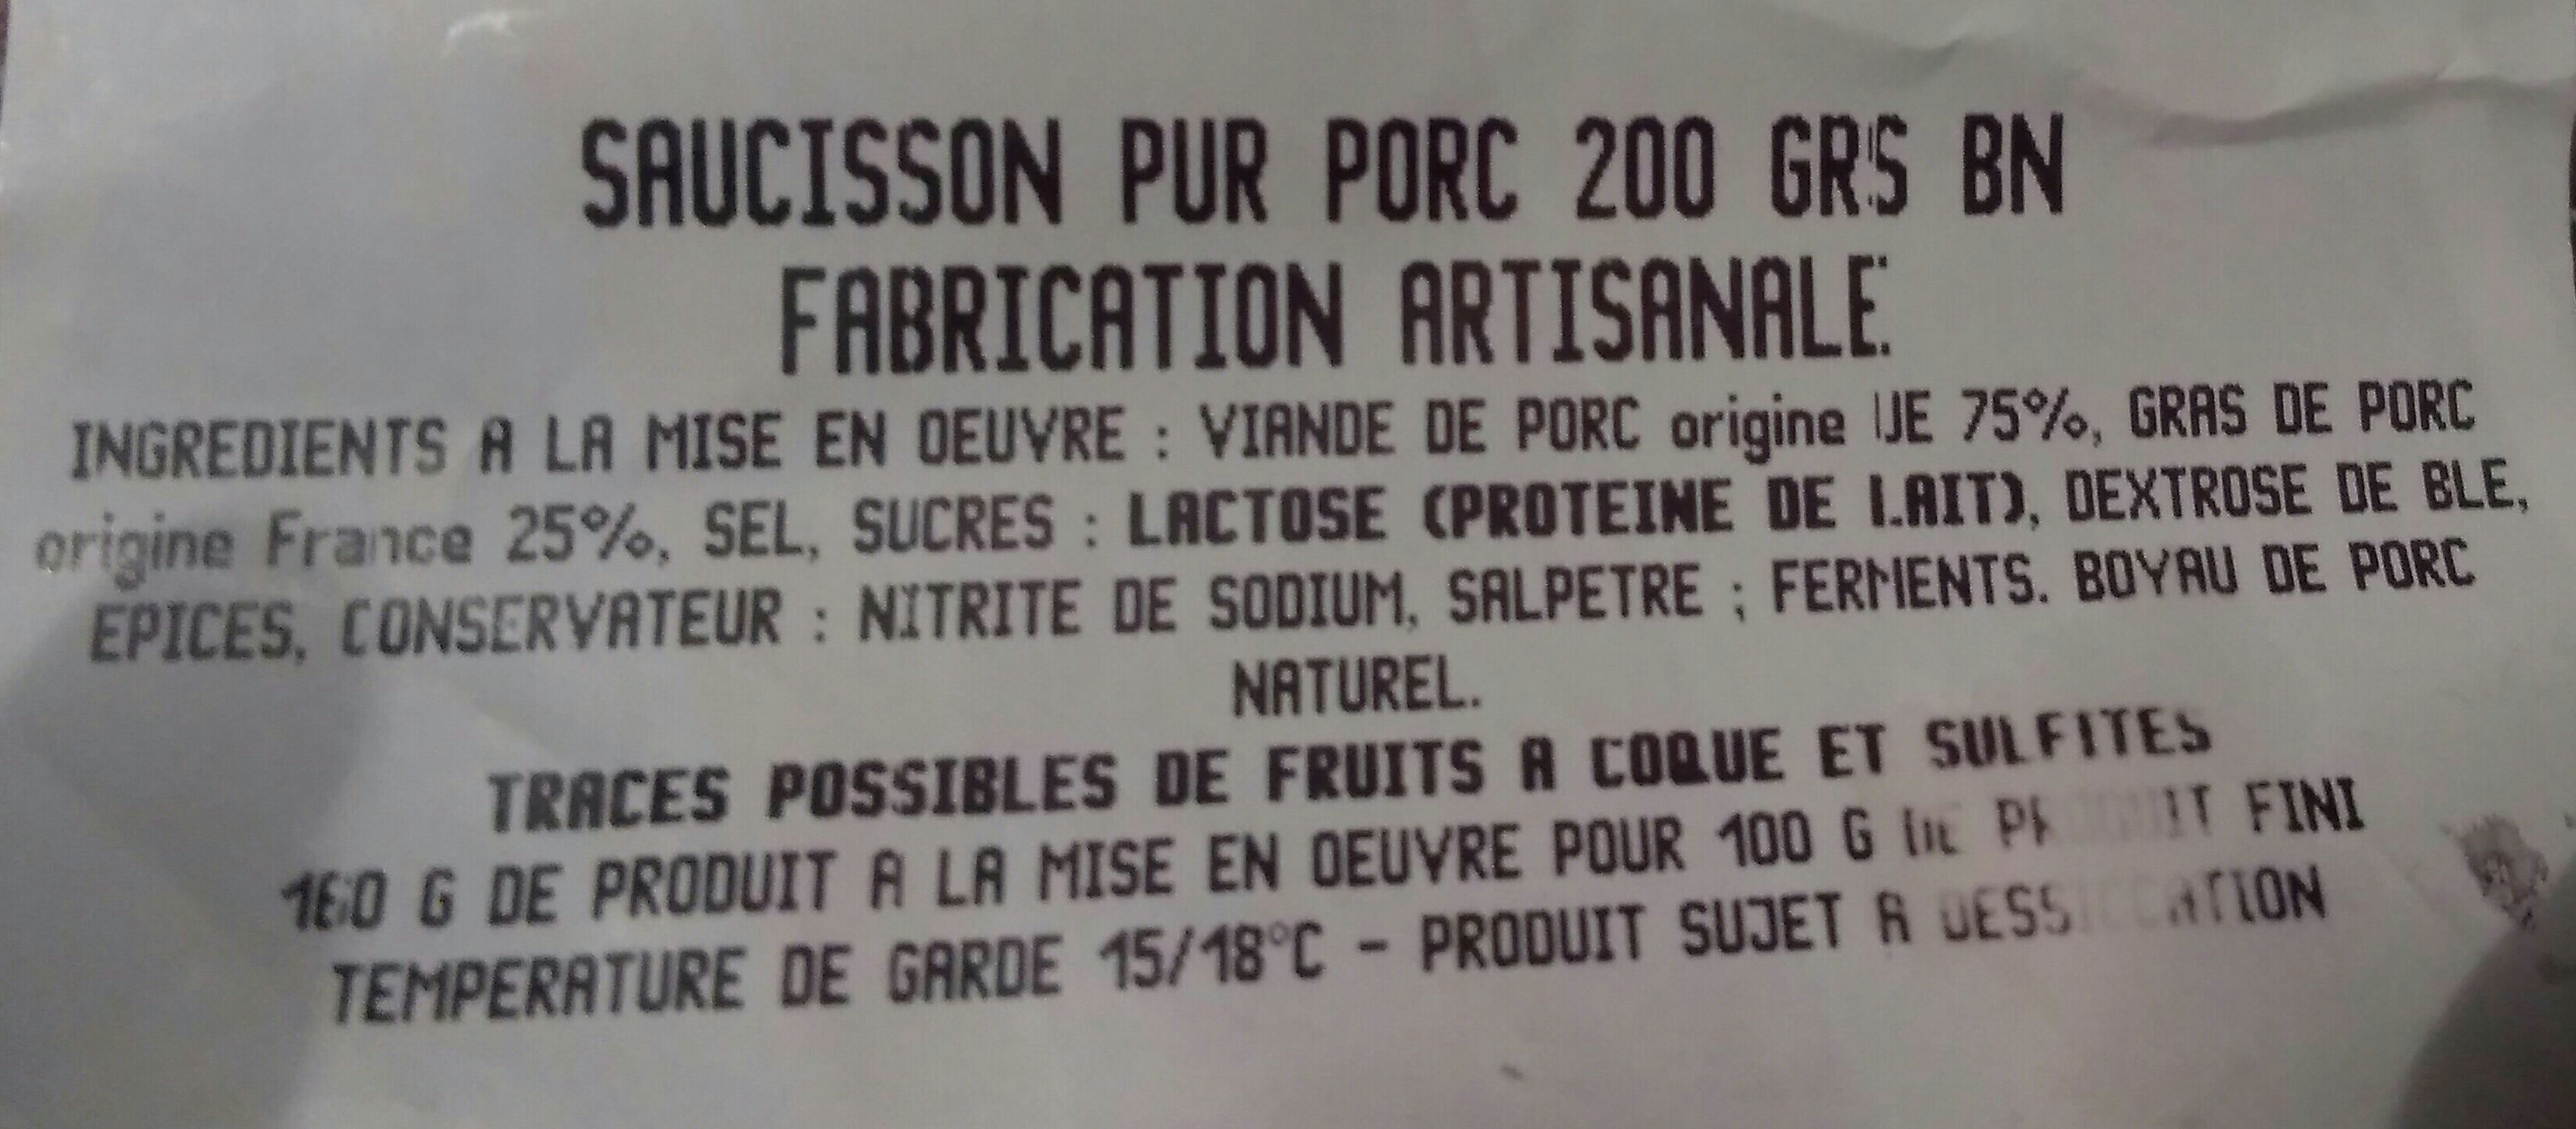 Saucisson Pur Porc - Ingredients - fr